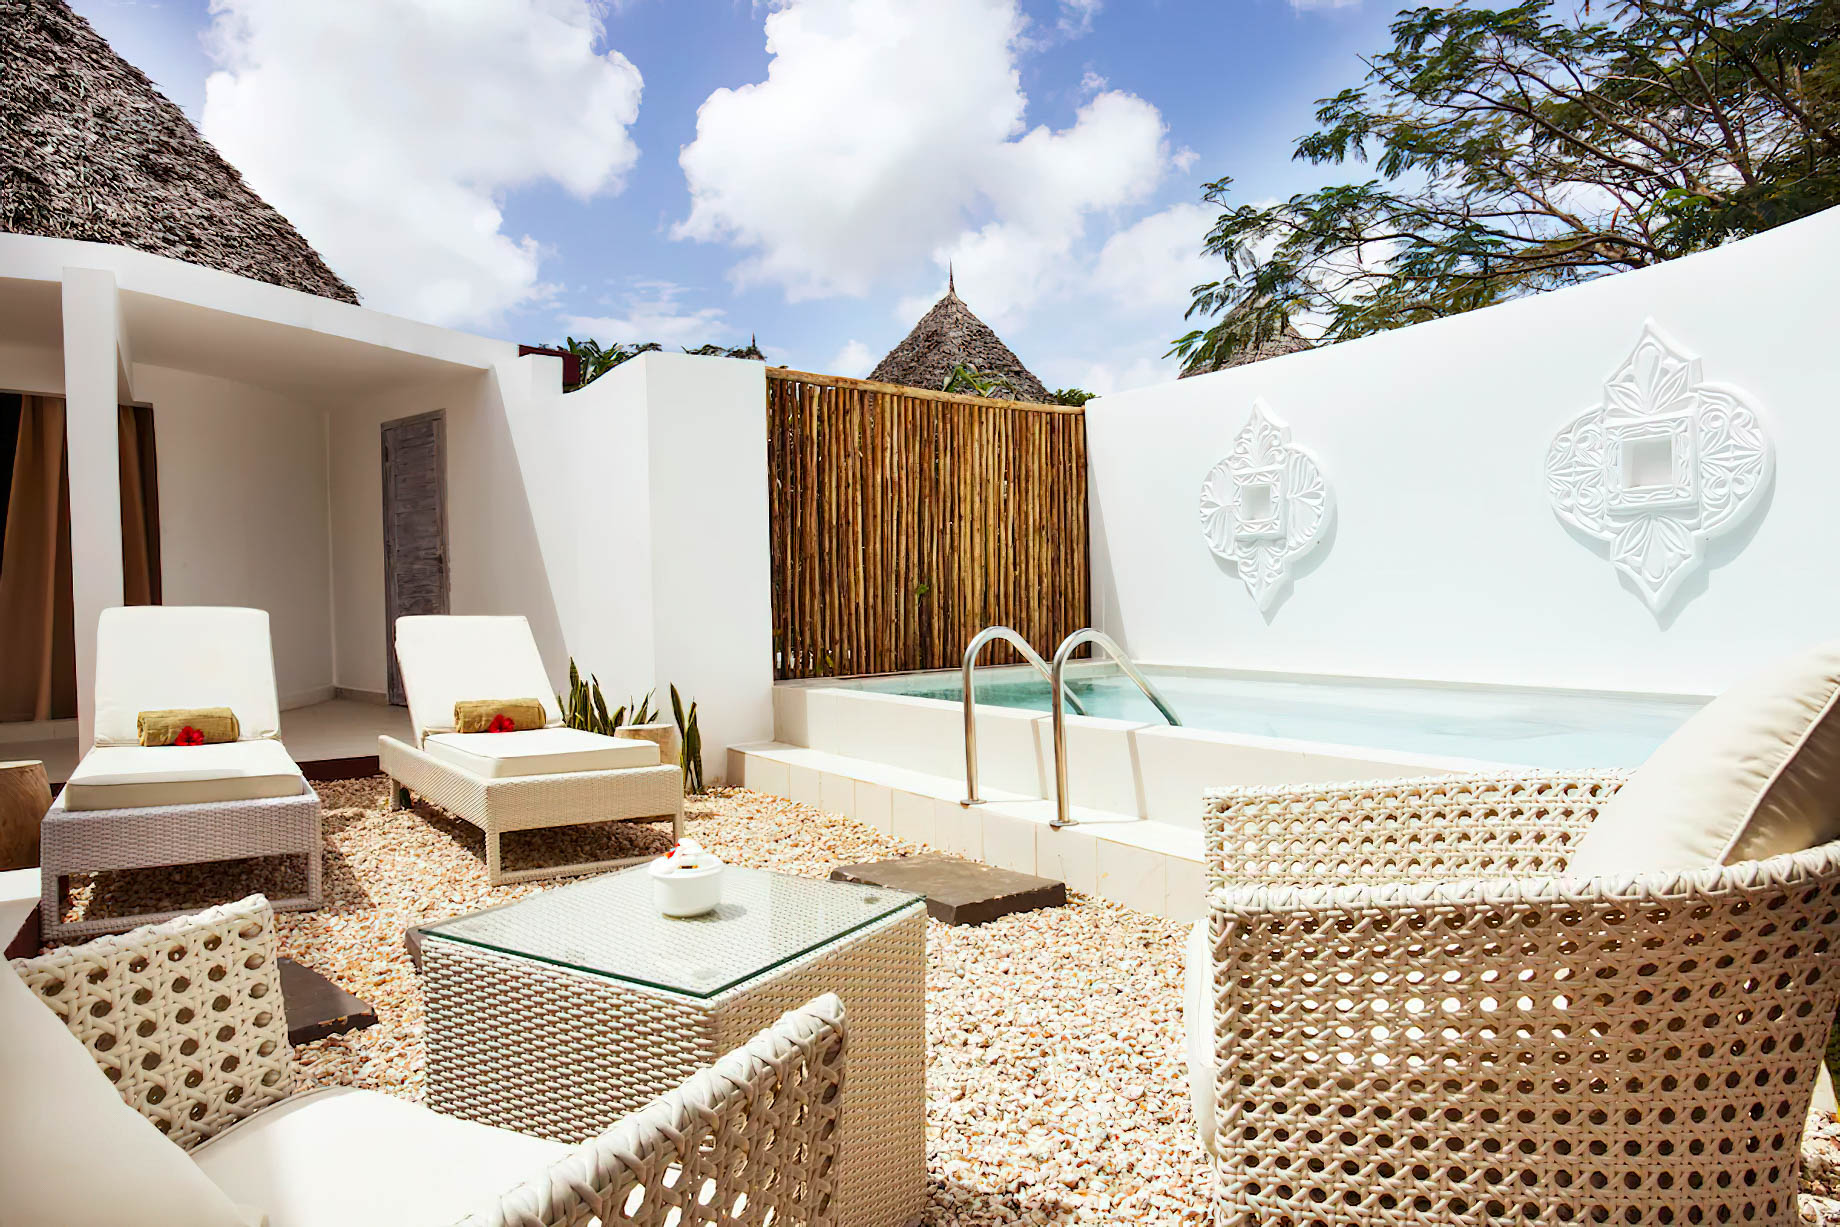 Gold Zanzibar Beach House & Spa Resort – Nungwi, Zanzibar, Tanzania – Villa Pool Deck